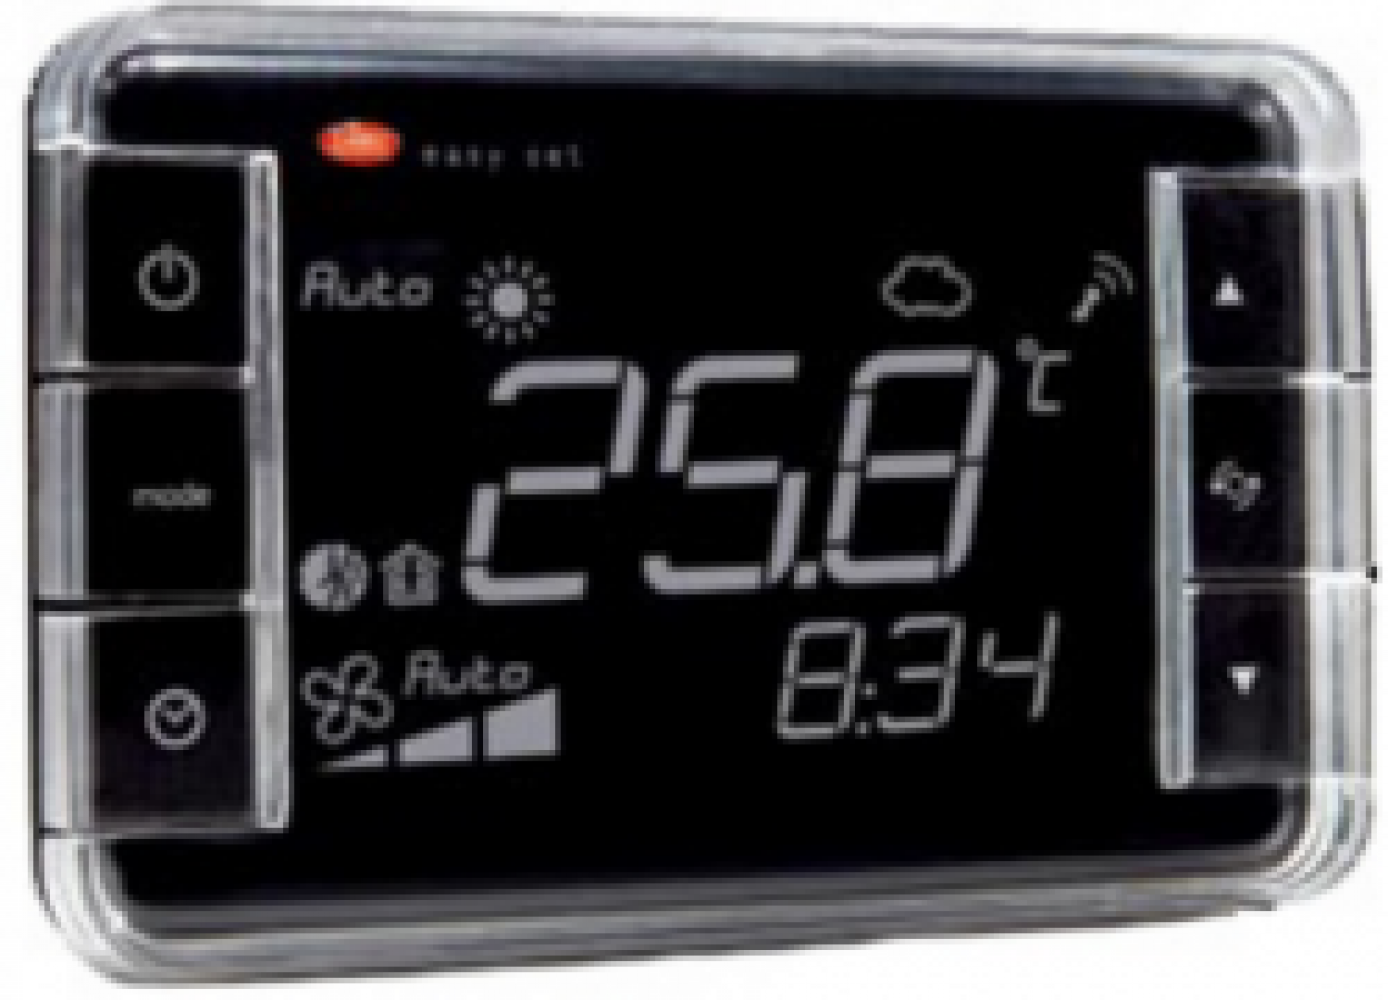 EW01TA2400 Термостат Easyset для e-dronic, контроль температуры, корпус черного цвета, &quot;инверсное&quot; отображение, подсветка